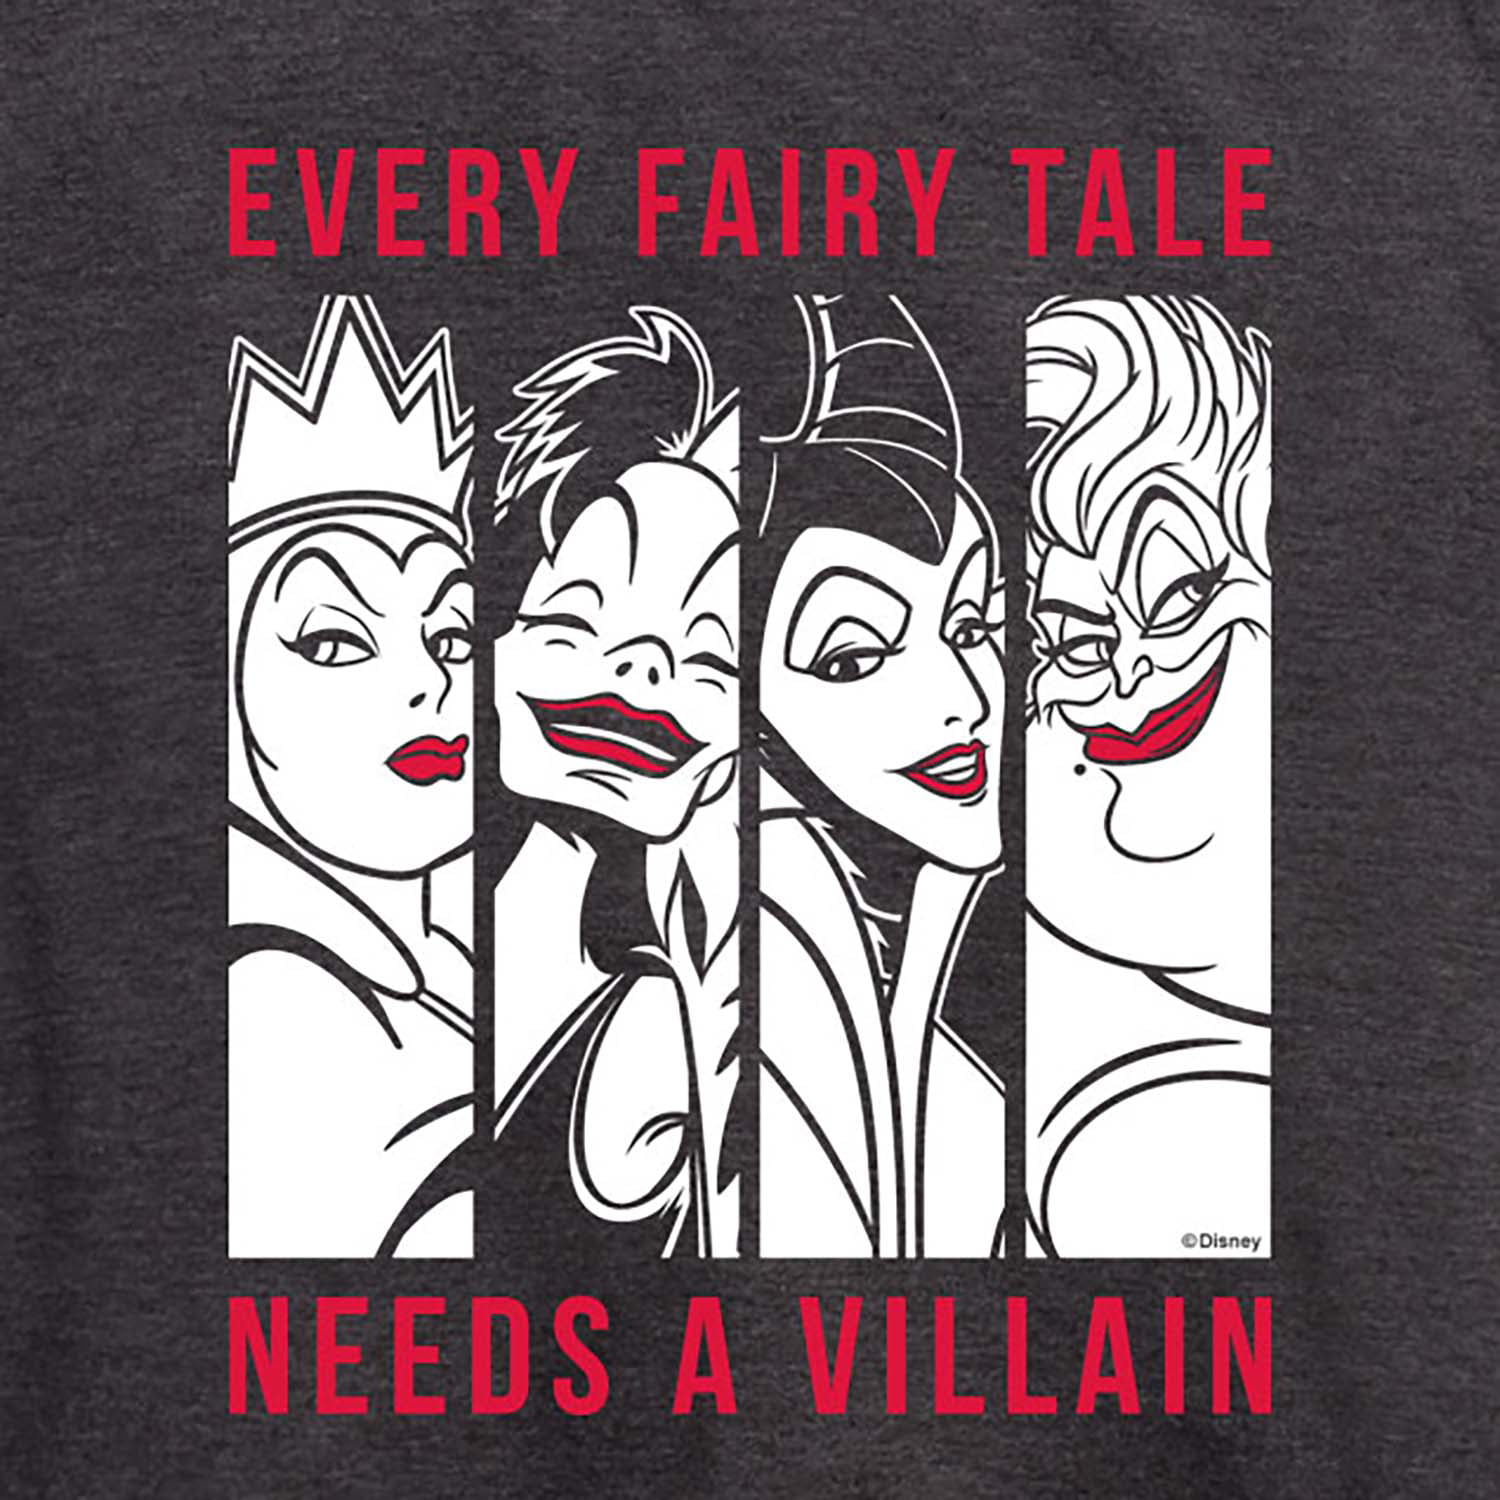 Villains Needs - - Villian Tale Disney Women\'s Fairy Graphic A Sleeve Short Every T-Shirt